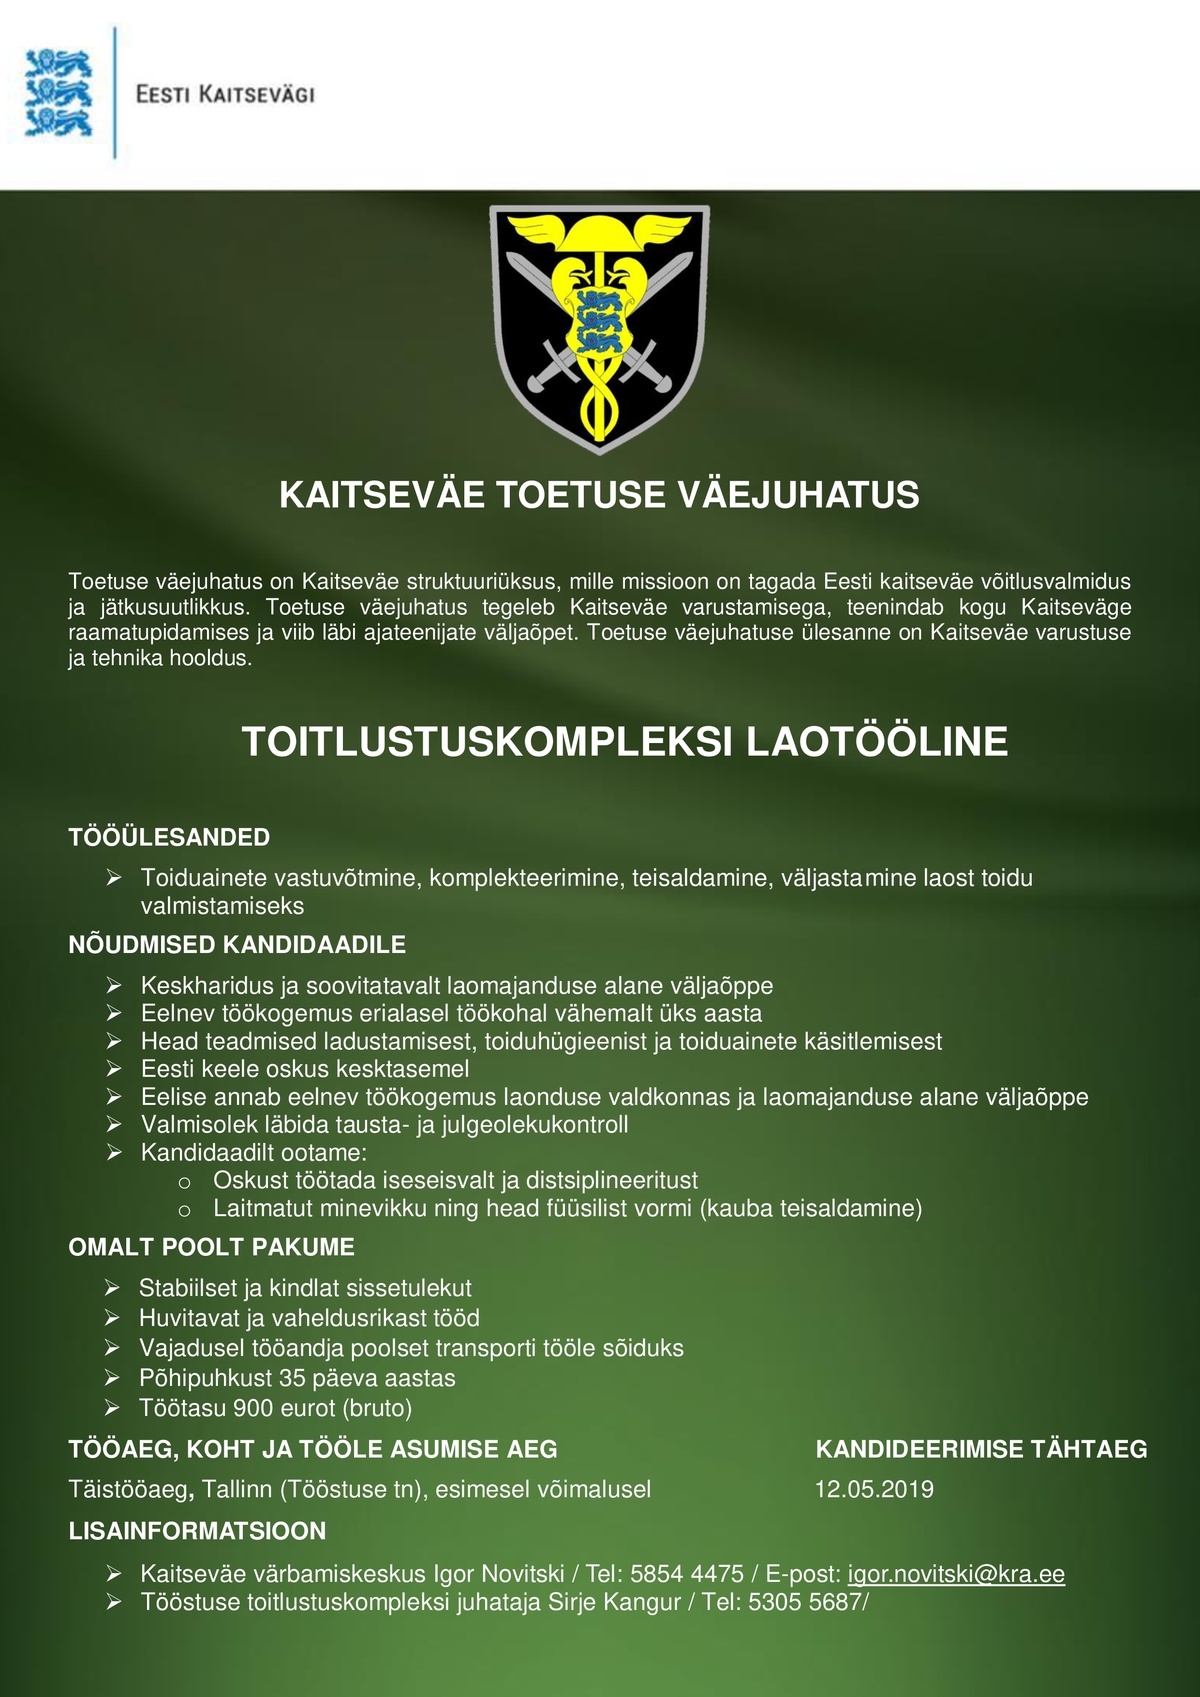 Toetuse väejuhatus Laotööline (Tallinn)